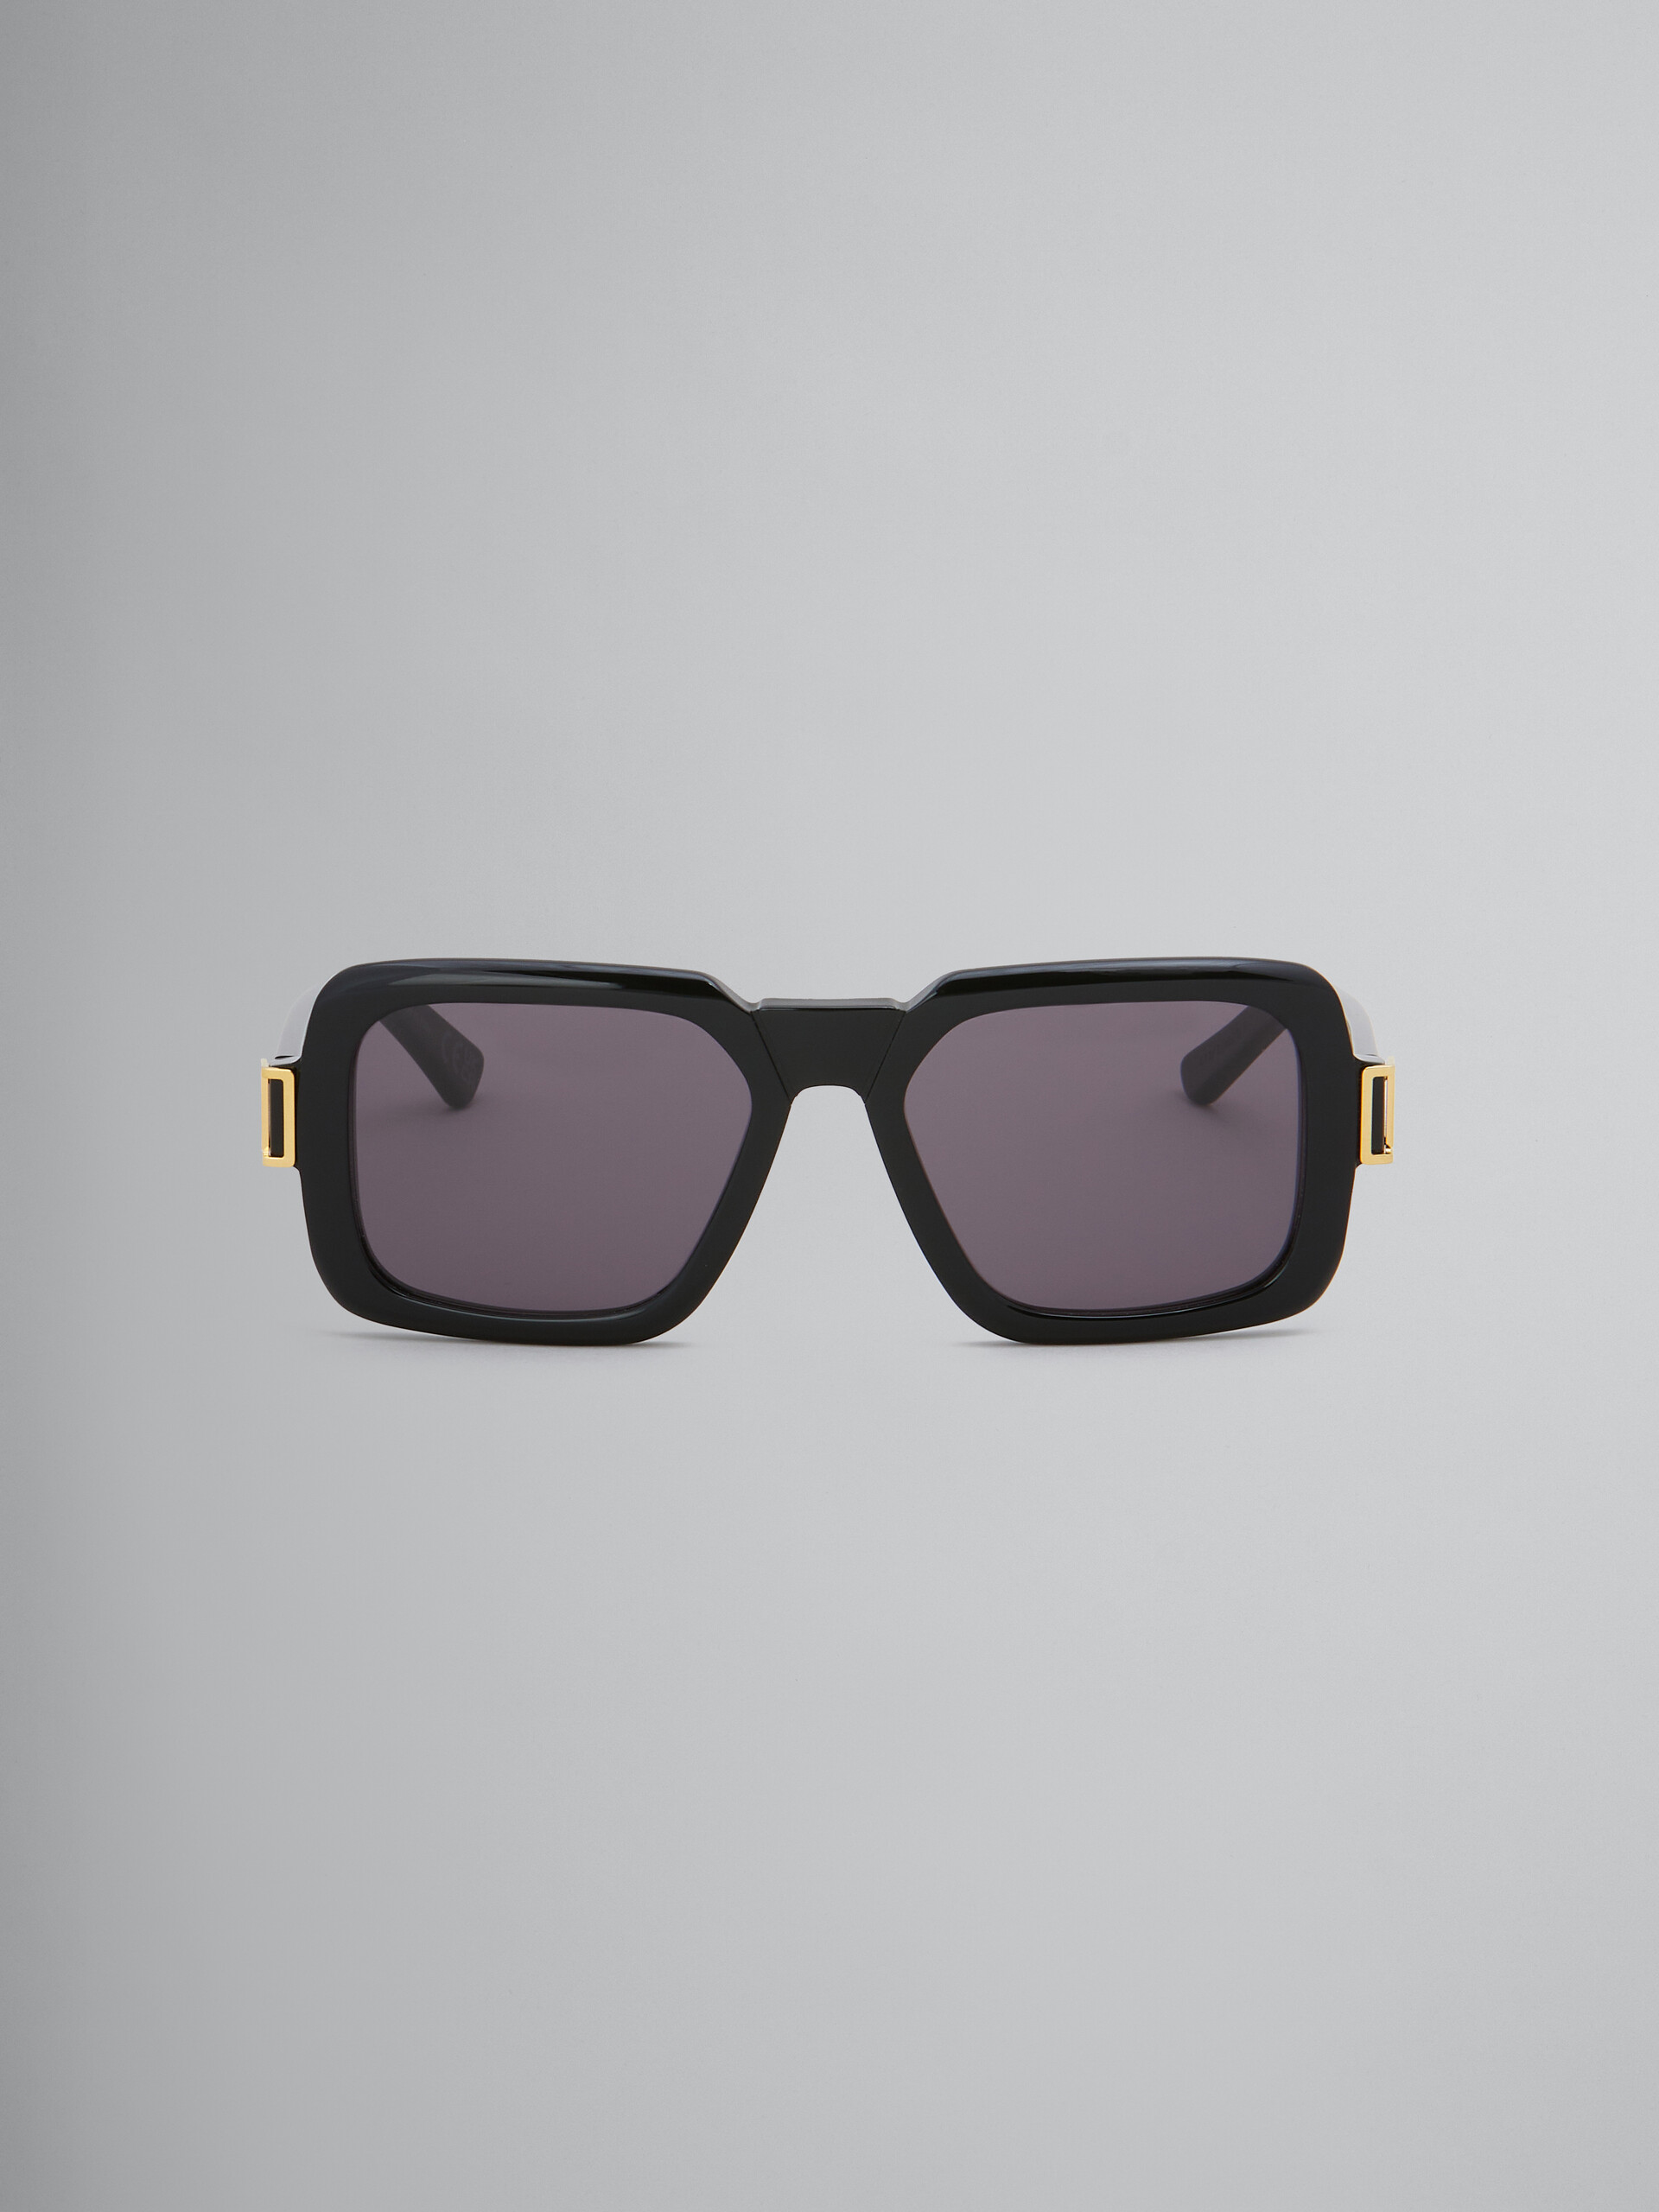 Schwarze Sonnenbrille Zamalek - Optisch - Image 1